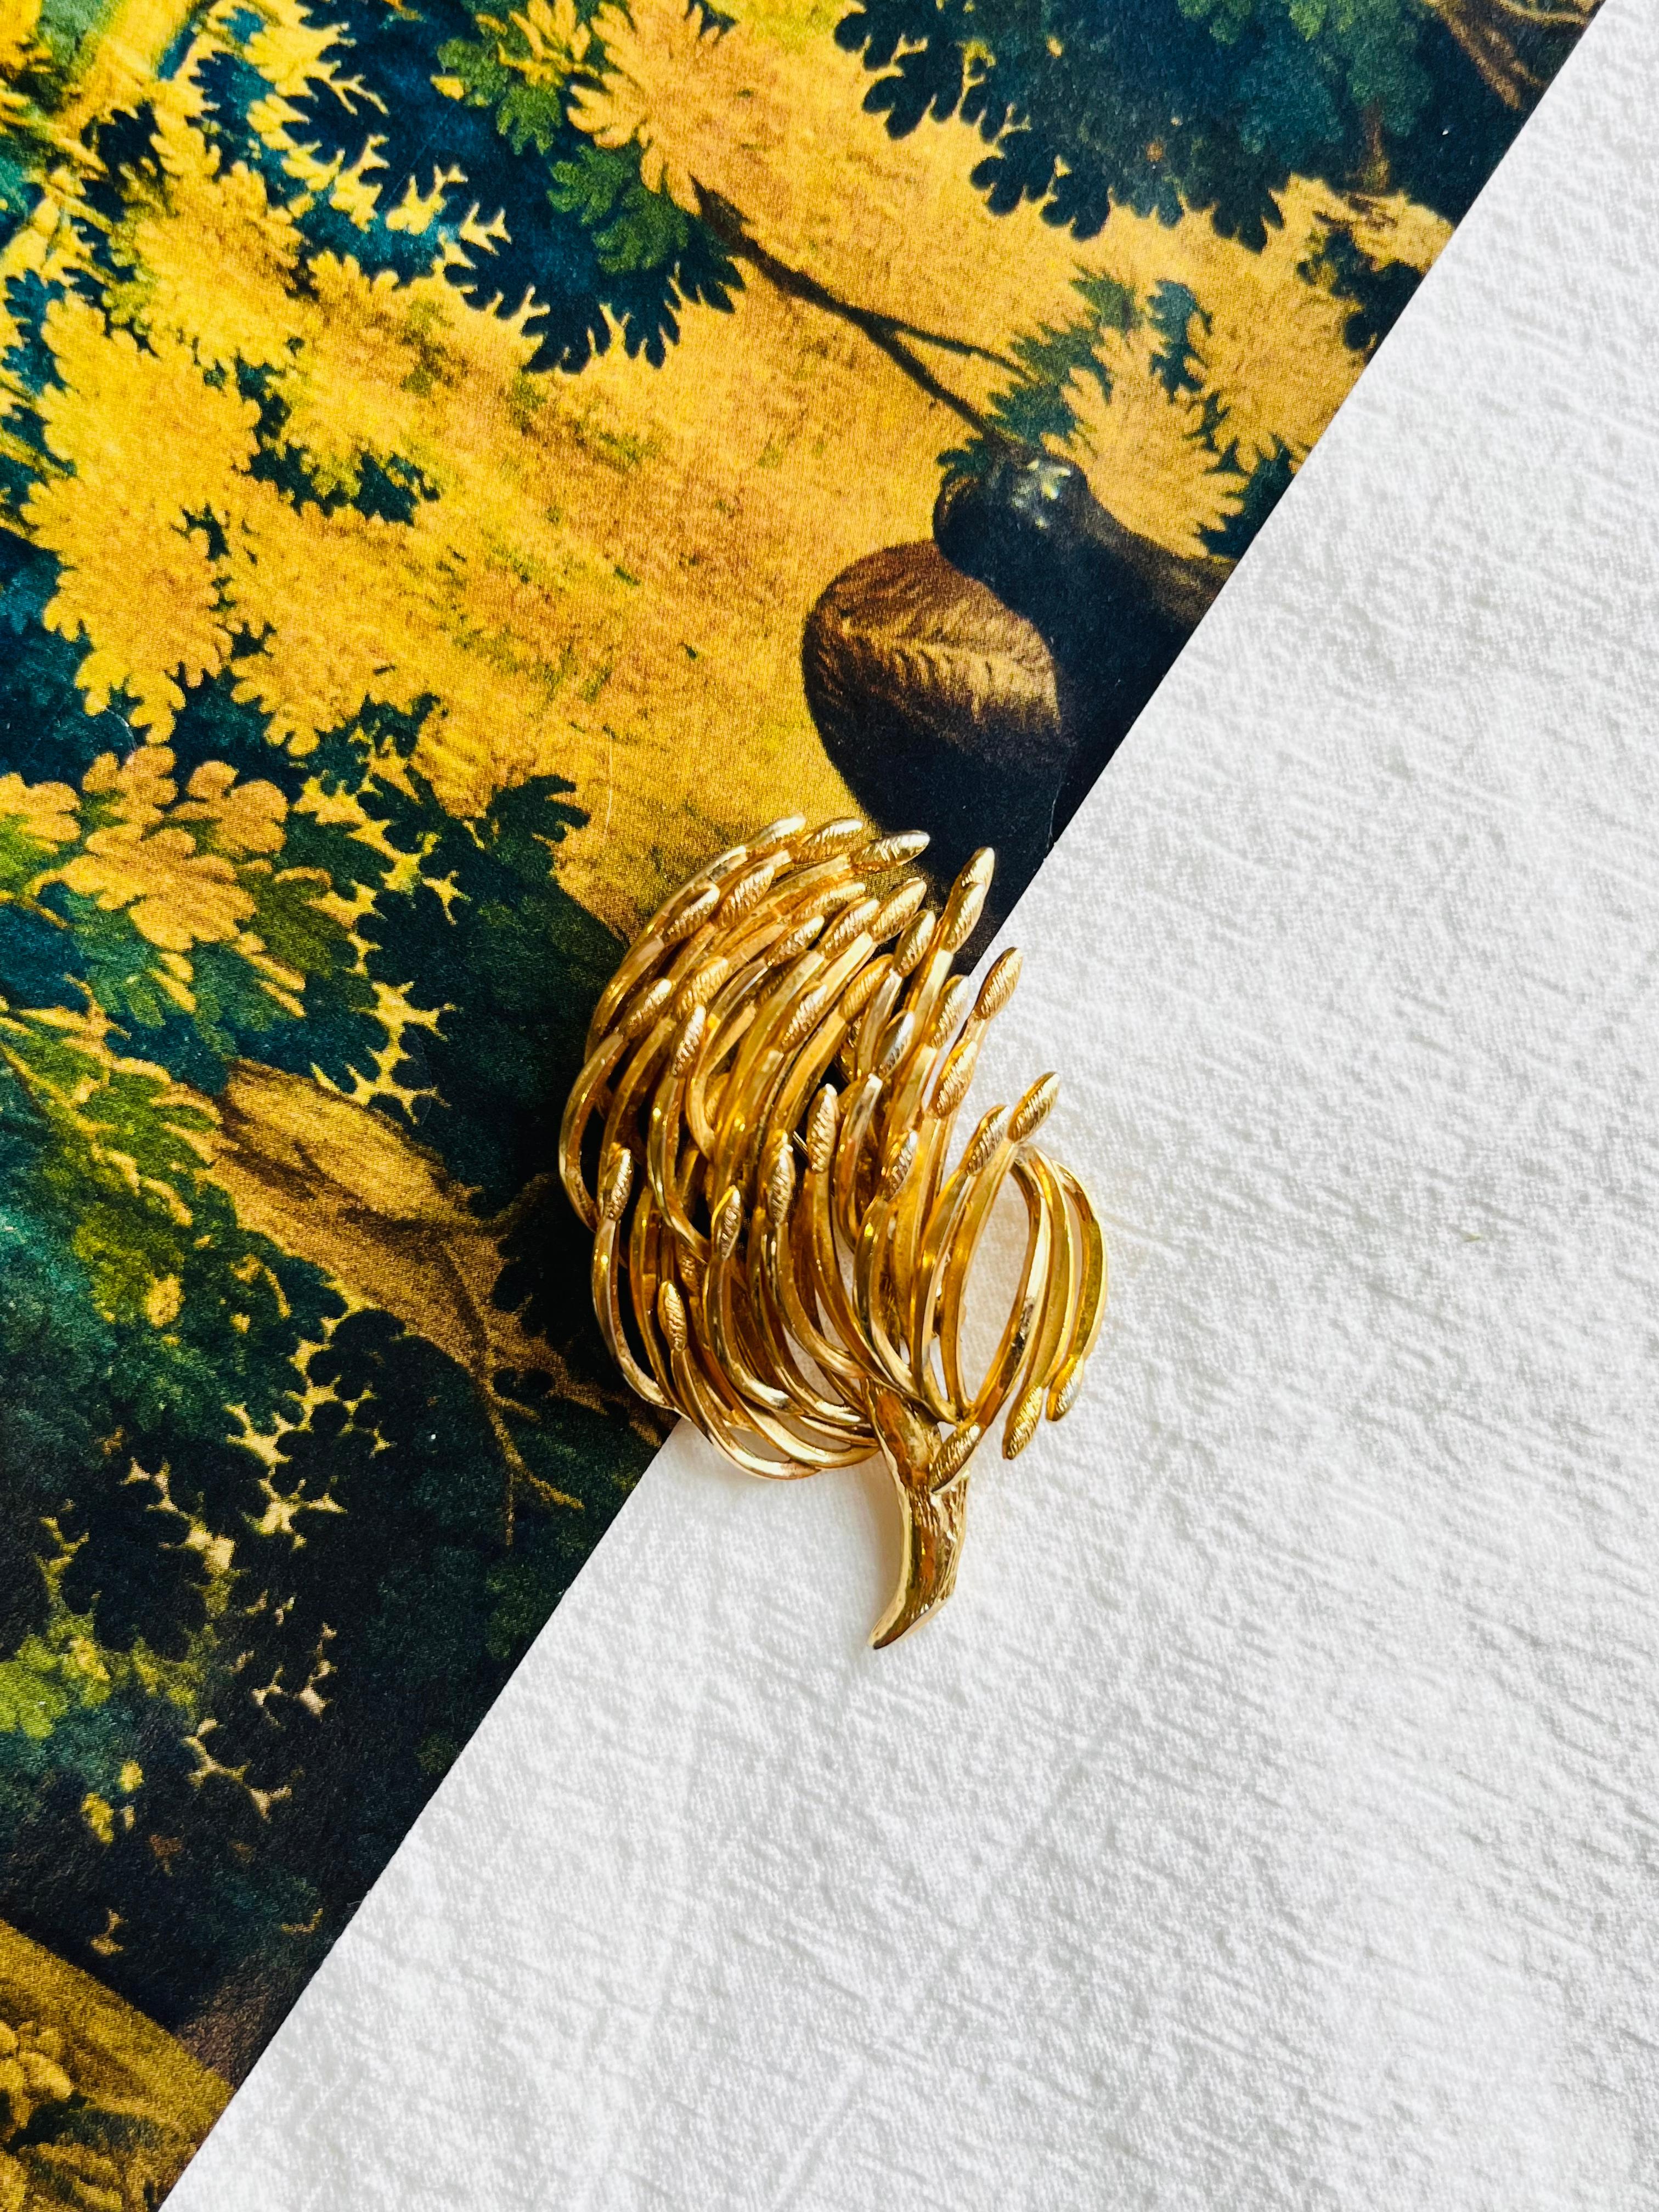 Artist Christian Dior GROSSE 1963 Vintage Wave Swirl Leaf Dandelion Branch Gold Brooch For Sale